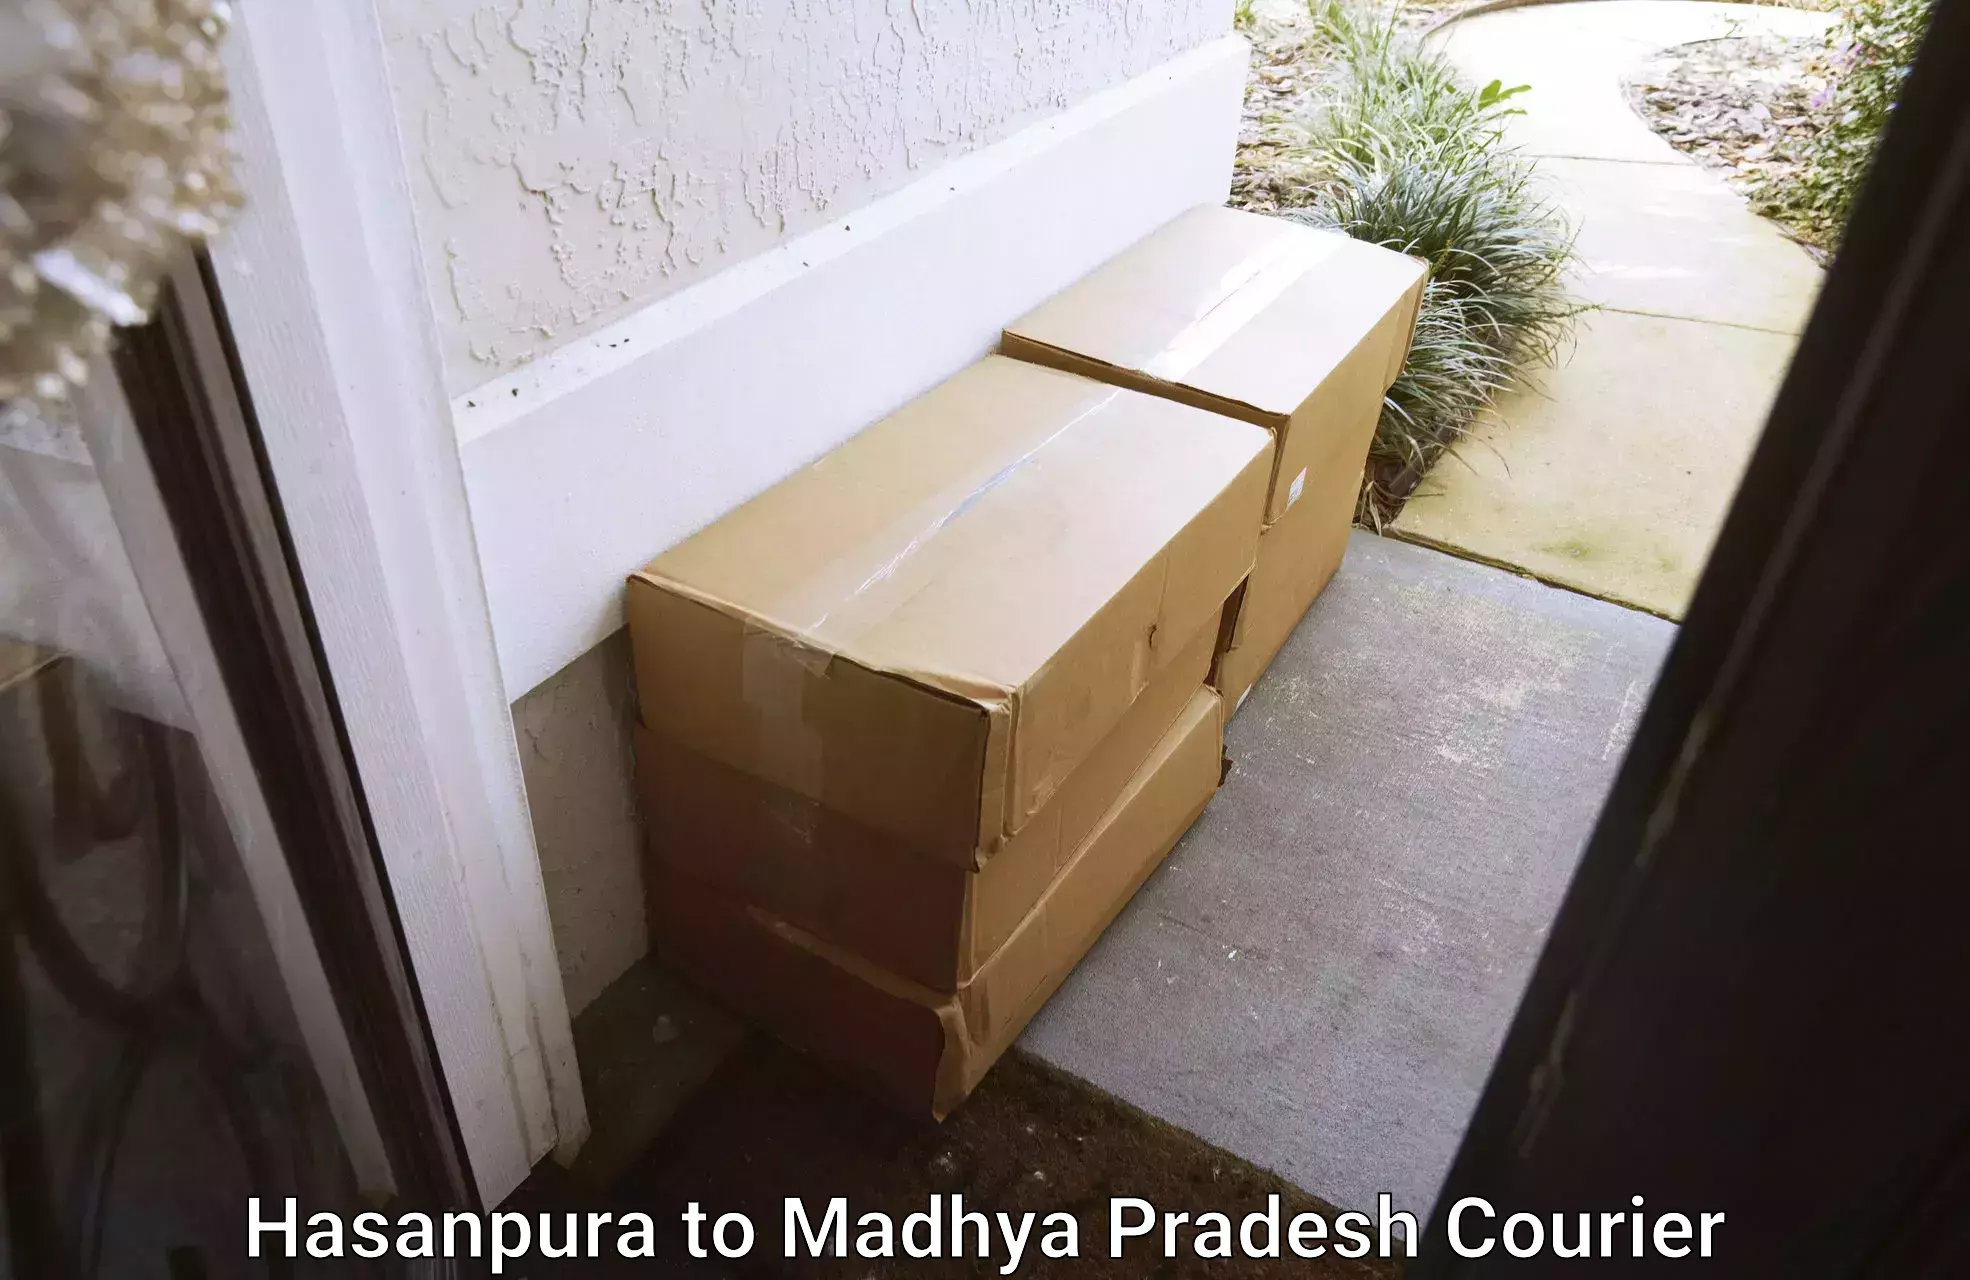 Efficient household movers Hasanpura to Madhya Pradesh